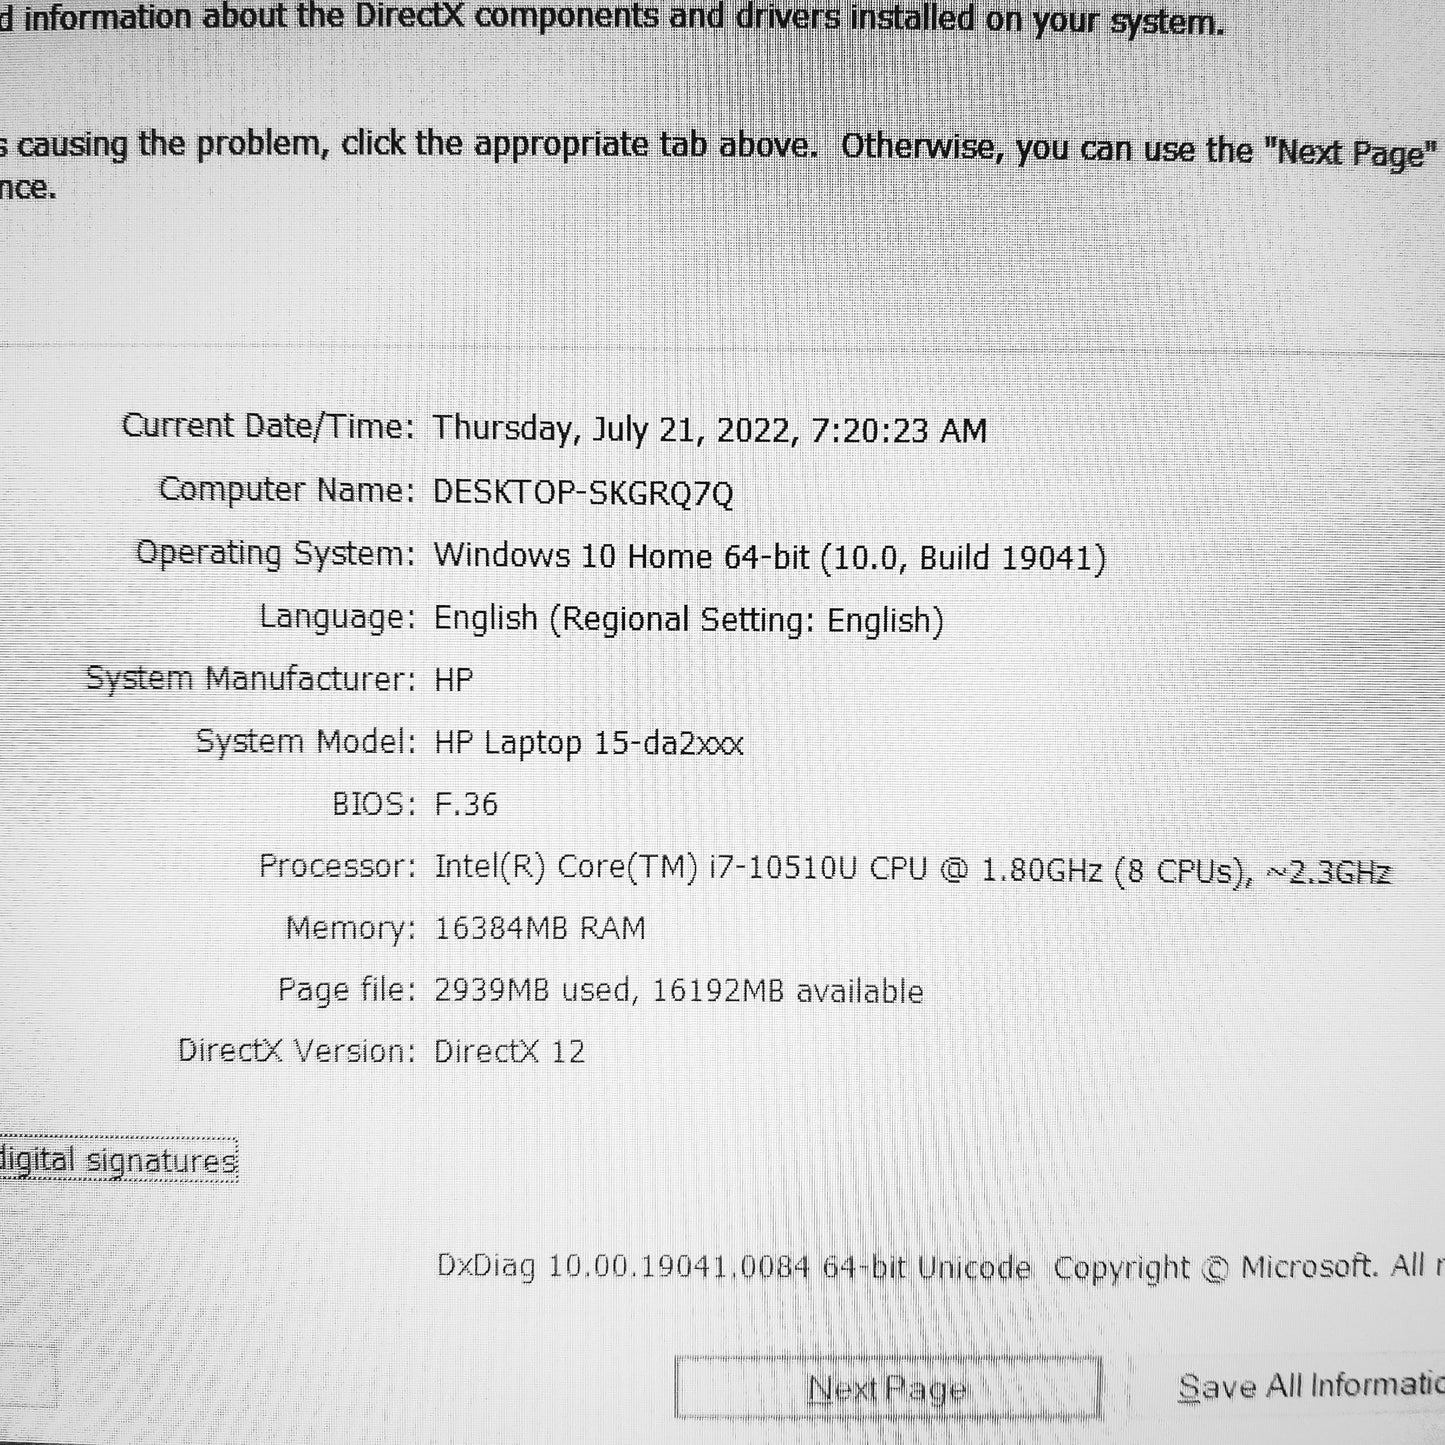 HP 15-da2 i7-10510u Mx310 4gb Laptop (Used Very Clean)